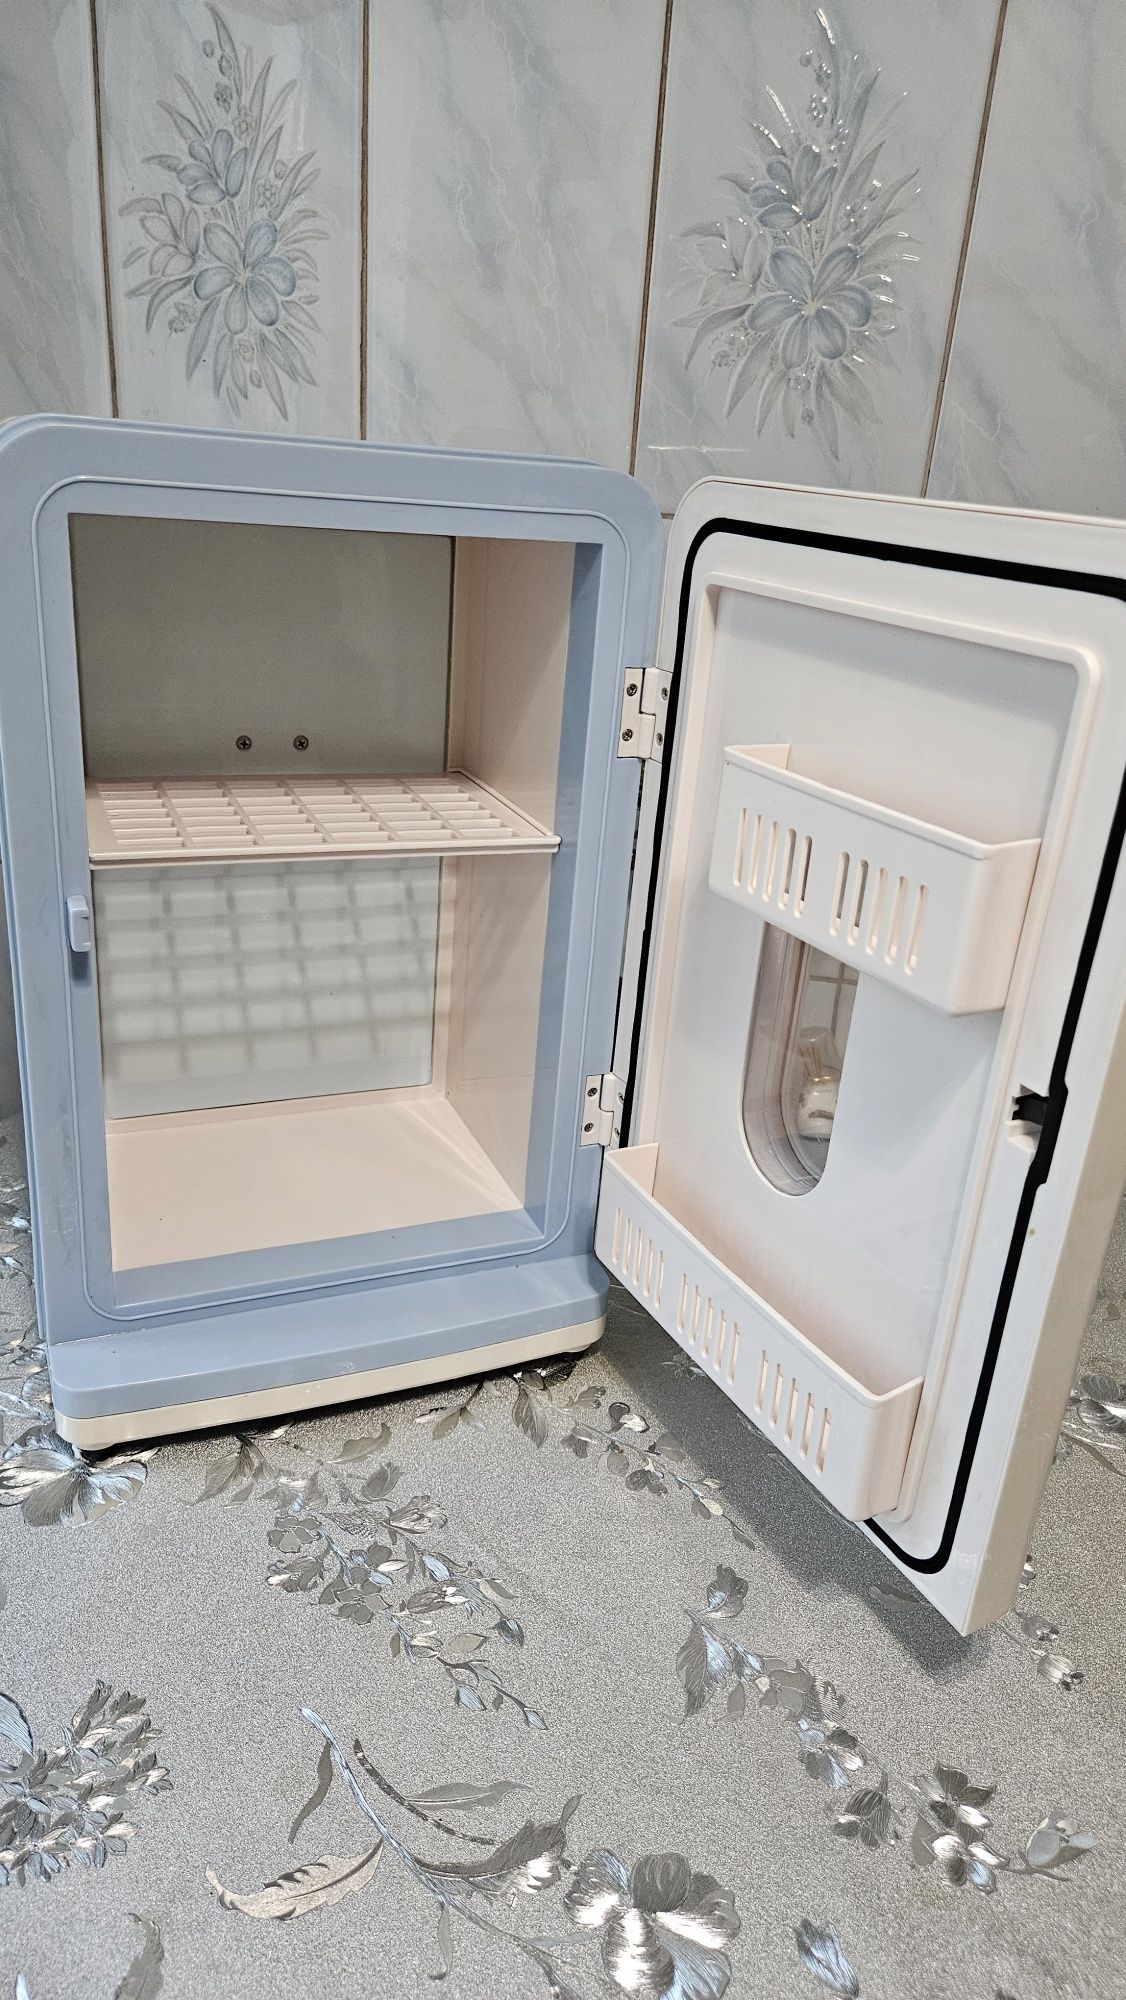 МІНІ-Холодильничок переносний, відAMWAY ,новий  і автомобільний